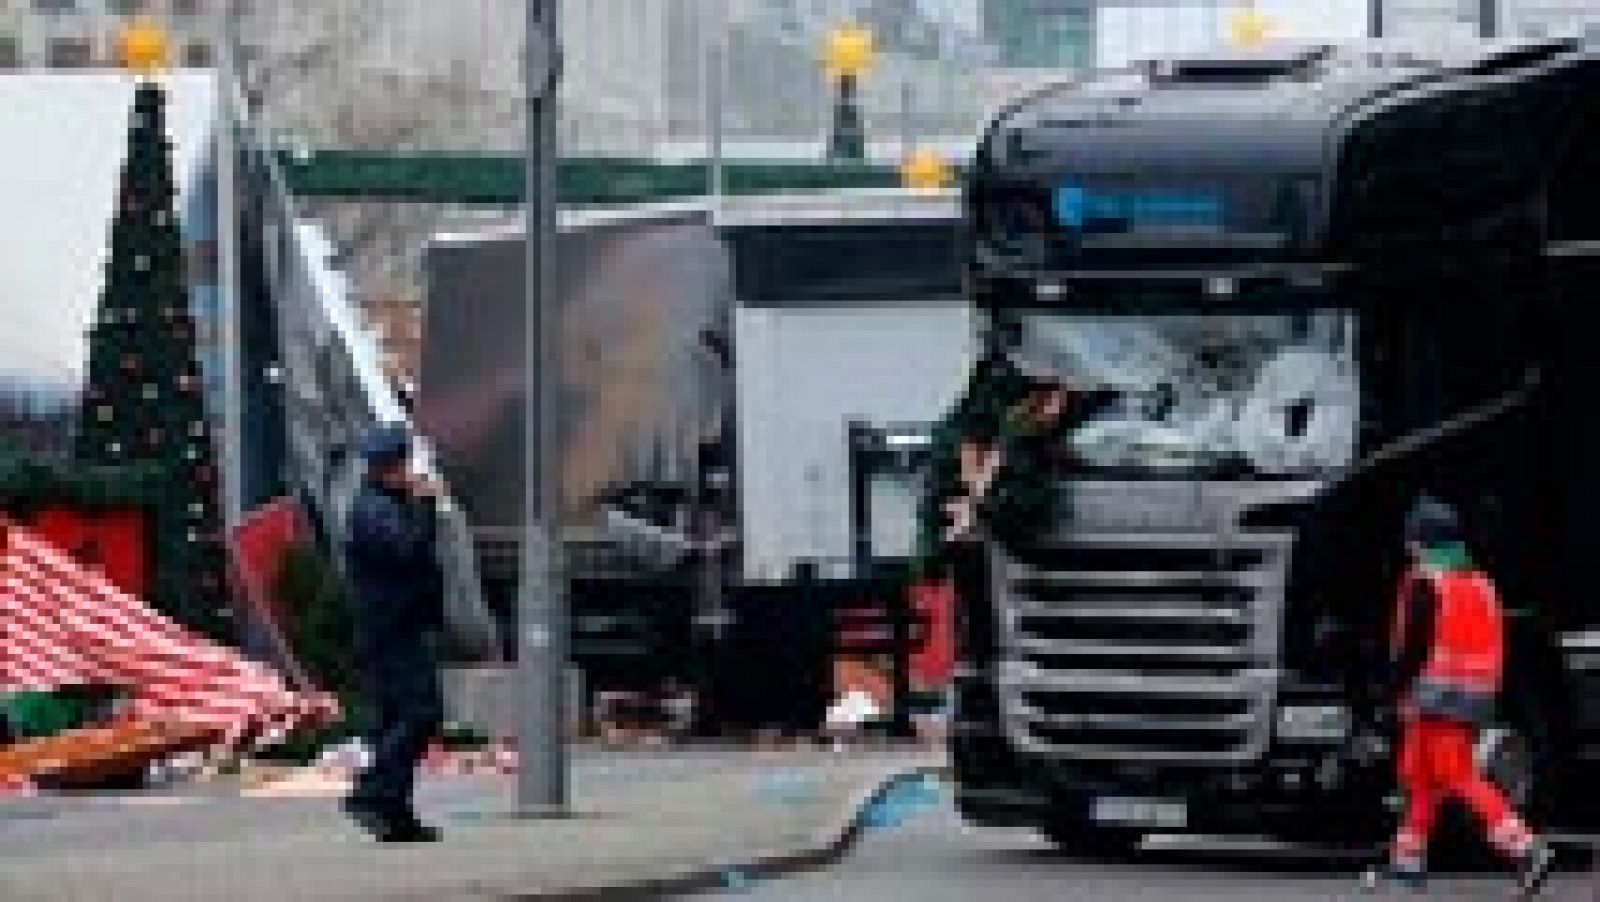 Atentado en Berlín - Merkel confirma atropello camion Berlin es atentado terrorista 